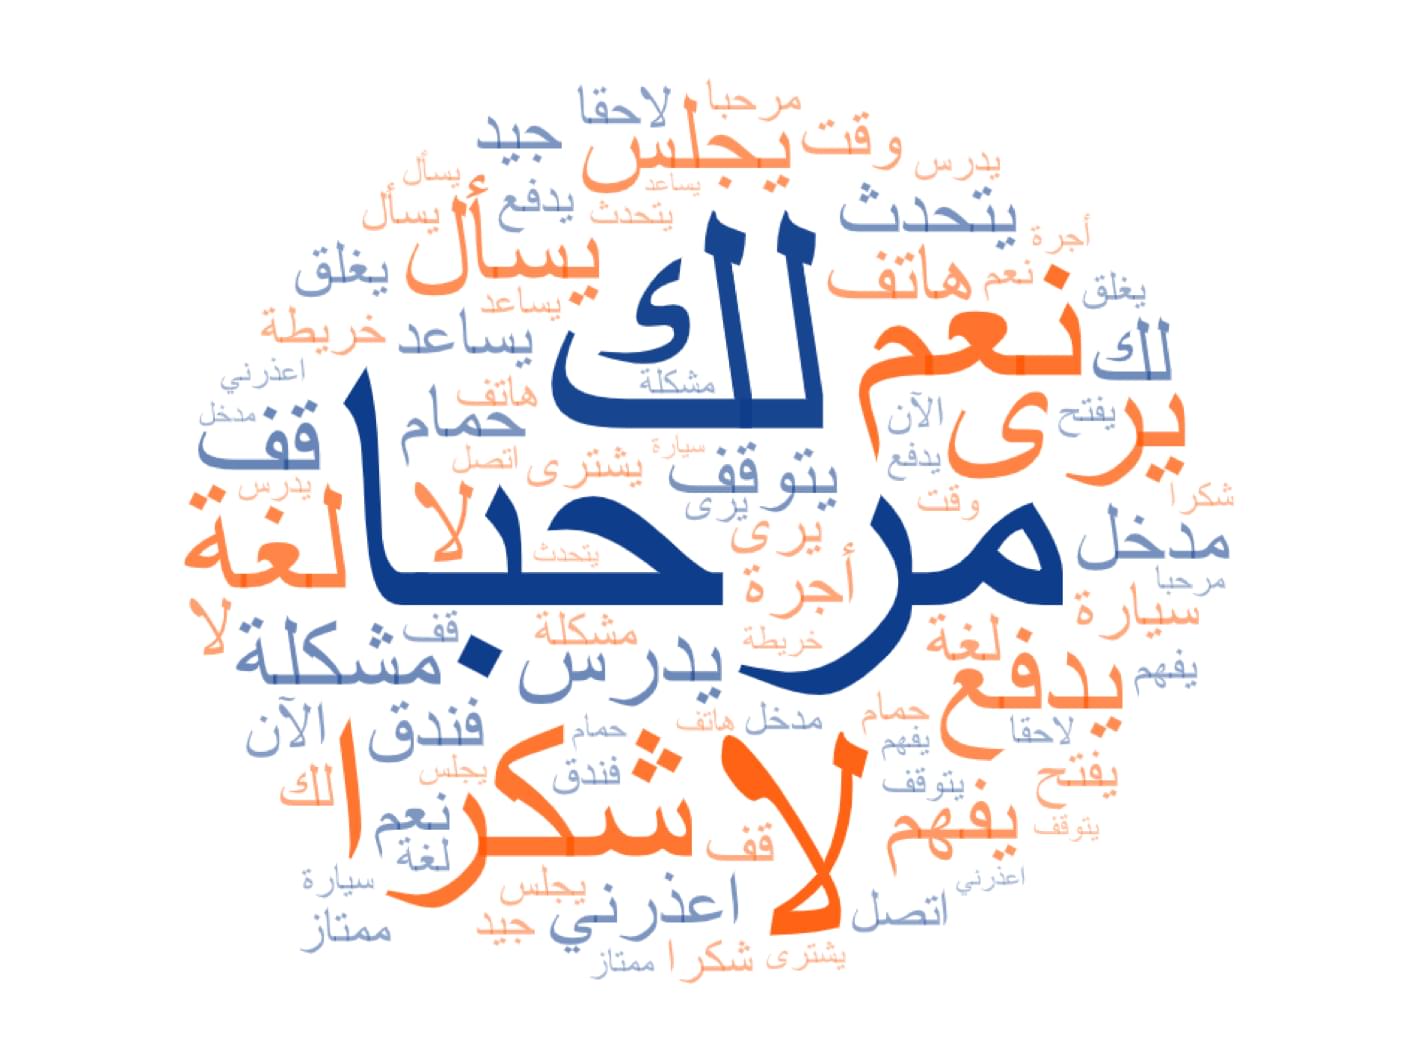 никнеймы на арабском для пабг фото 119